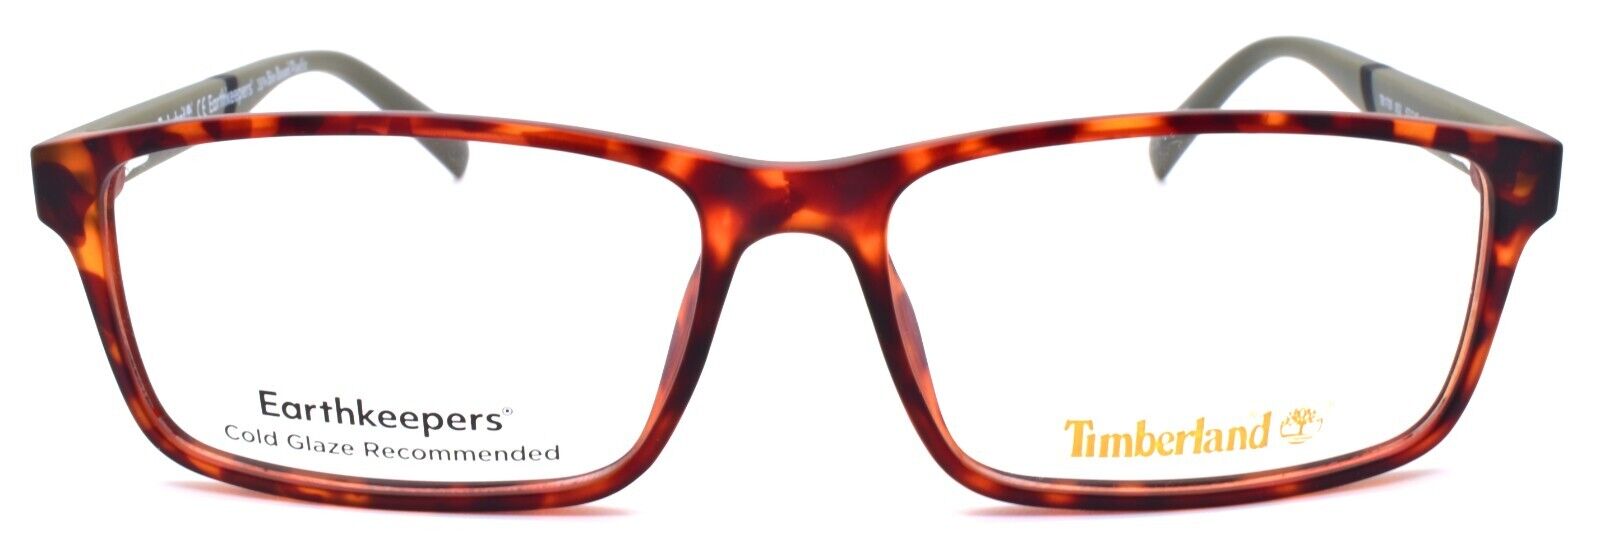 2-TIMBERLAND TB1705 052 Men's Eyeglasses Frames 57-15-145 Dark Havana-889214212511-IKSpecs